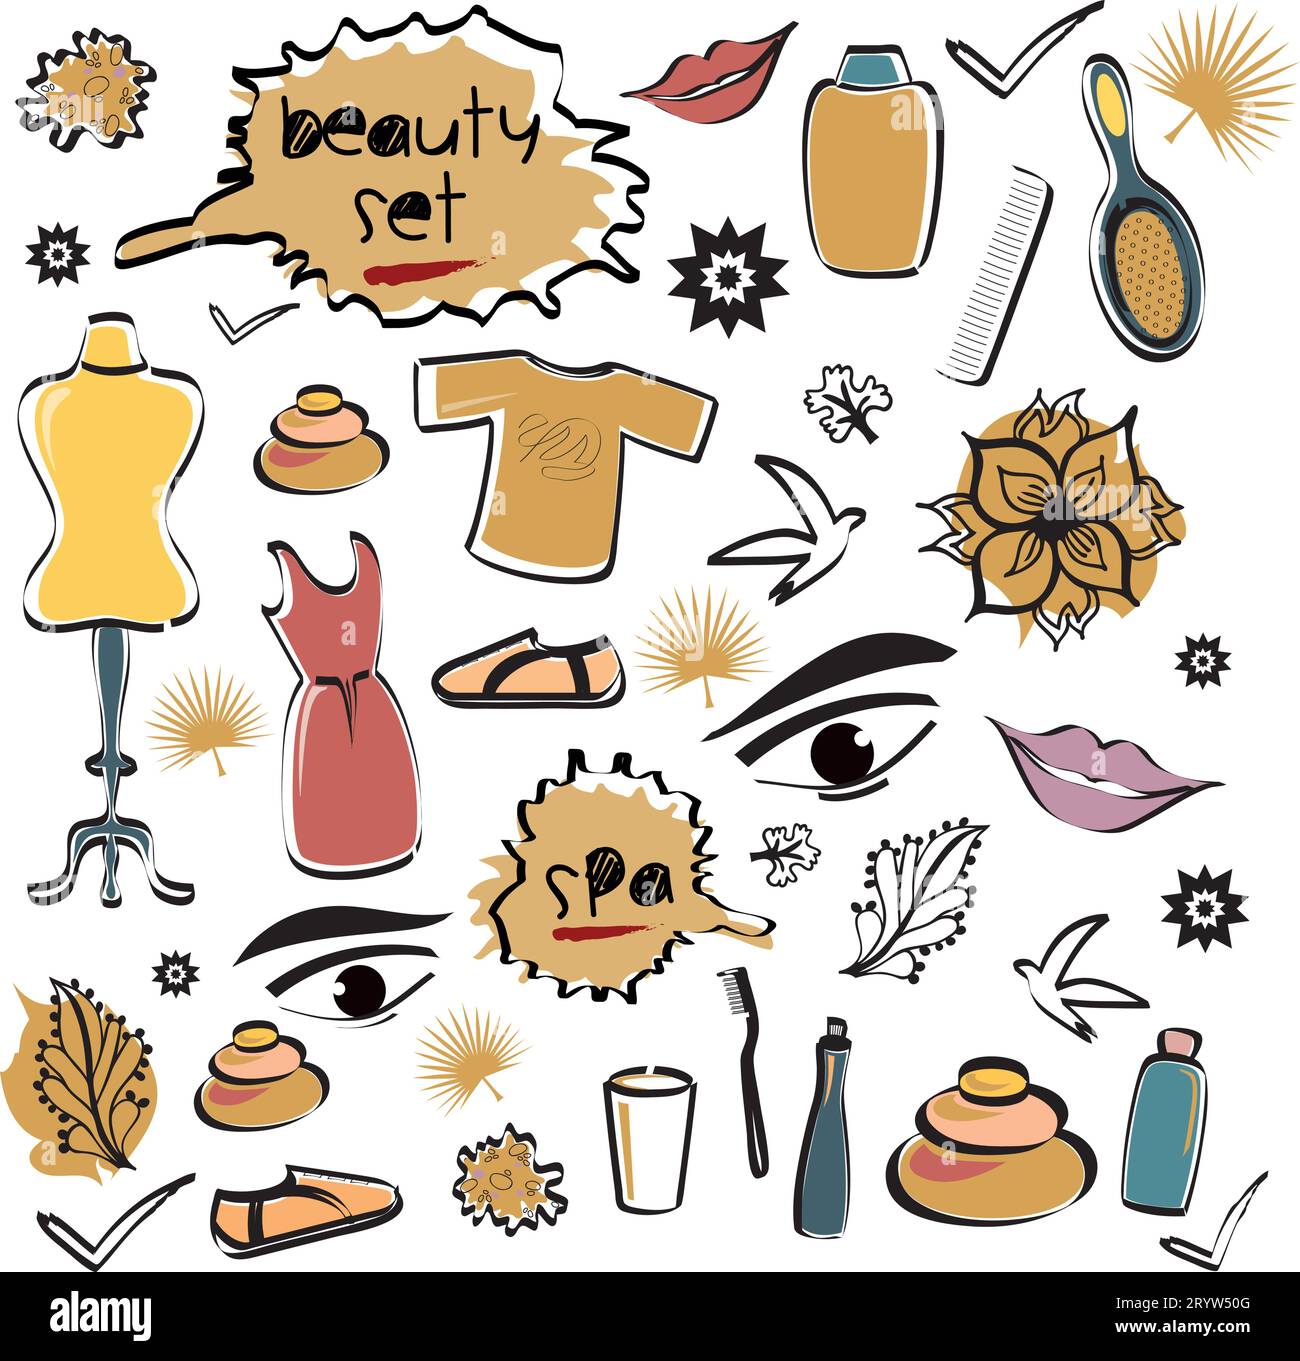 Set von Schönheitsgegenständen Objekte Elemente Icons mit Spa, Mode Doodles in verschiedenen Farben - Vektor Design Illustration von Hand gezeichnetes Kunstwerk - Kleid Stock Vektor